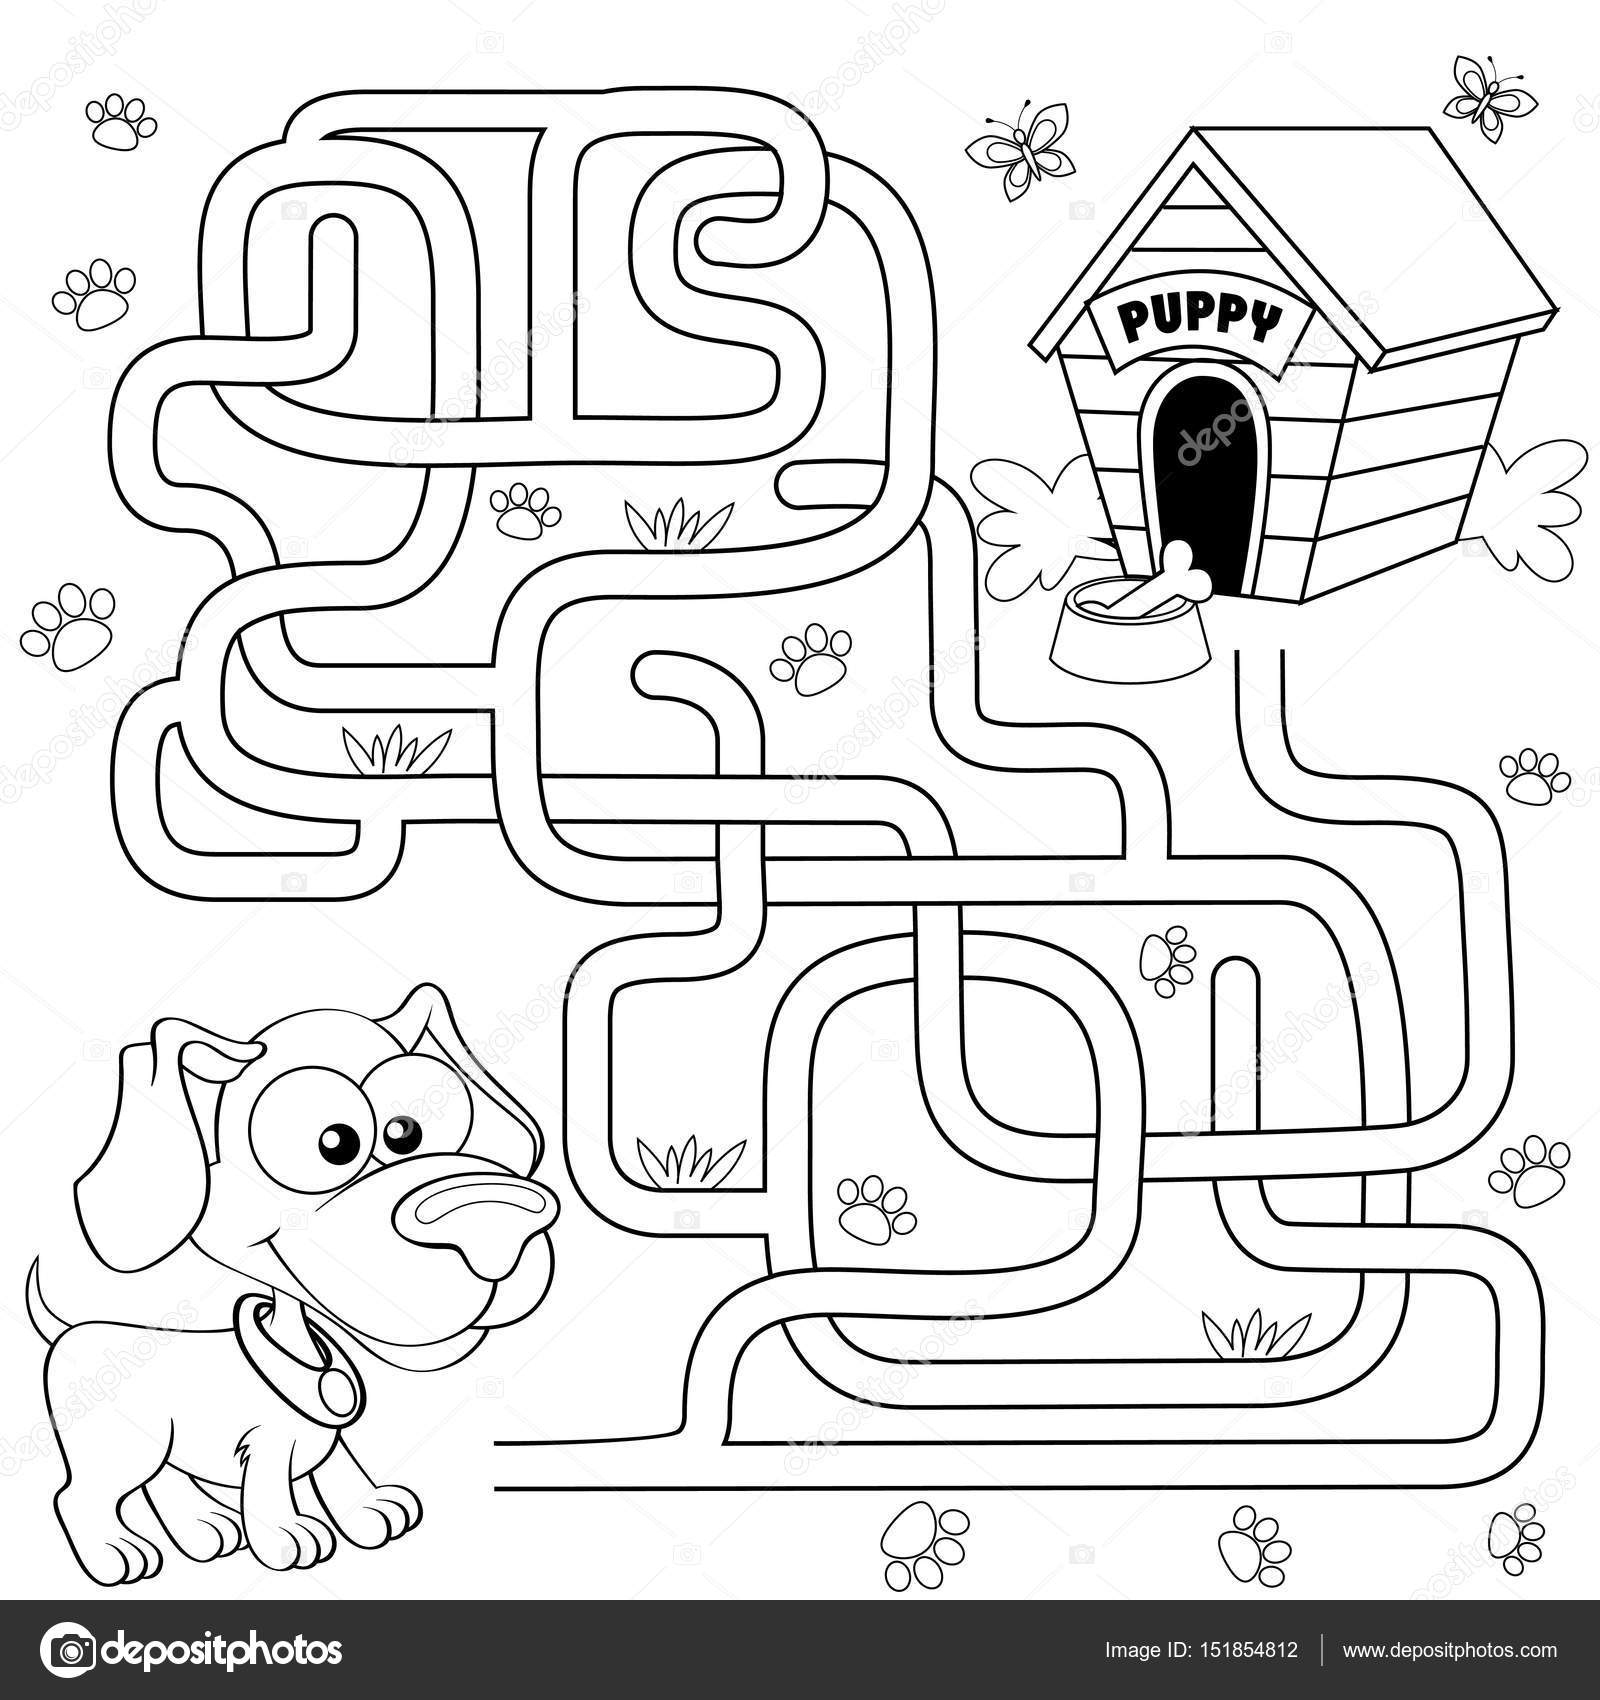 Ajude a lebre fofa a encontrar o caminho certo para a escola. estudante com  mochila correr para a escola através do labirinto. jogo de labirinto para  crianças. dia da ilustração do conhecimento.